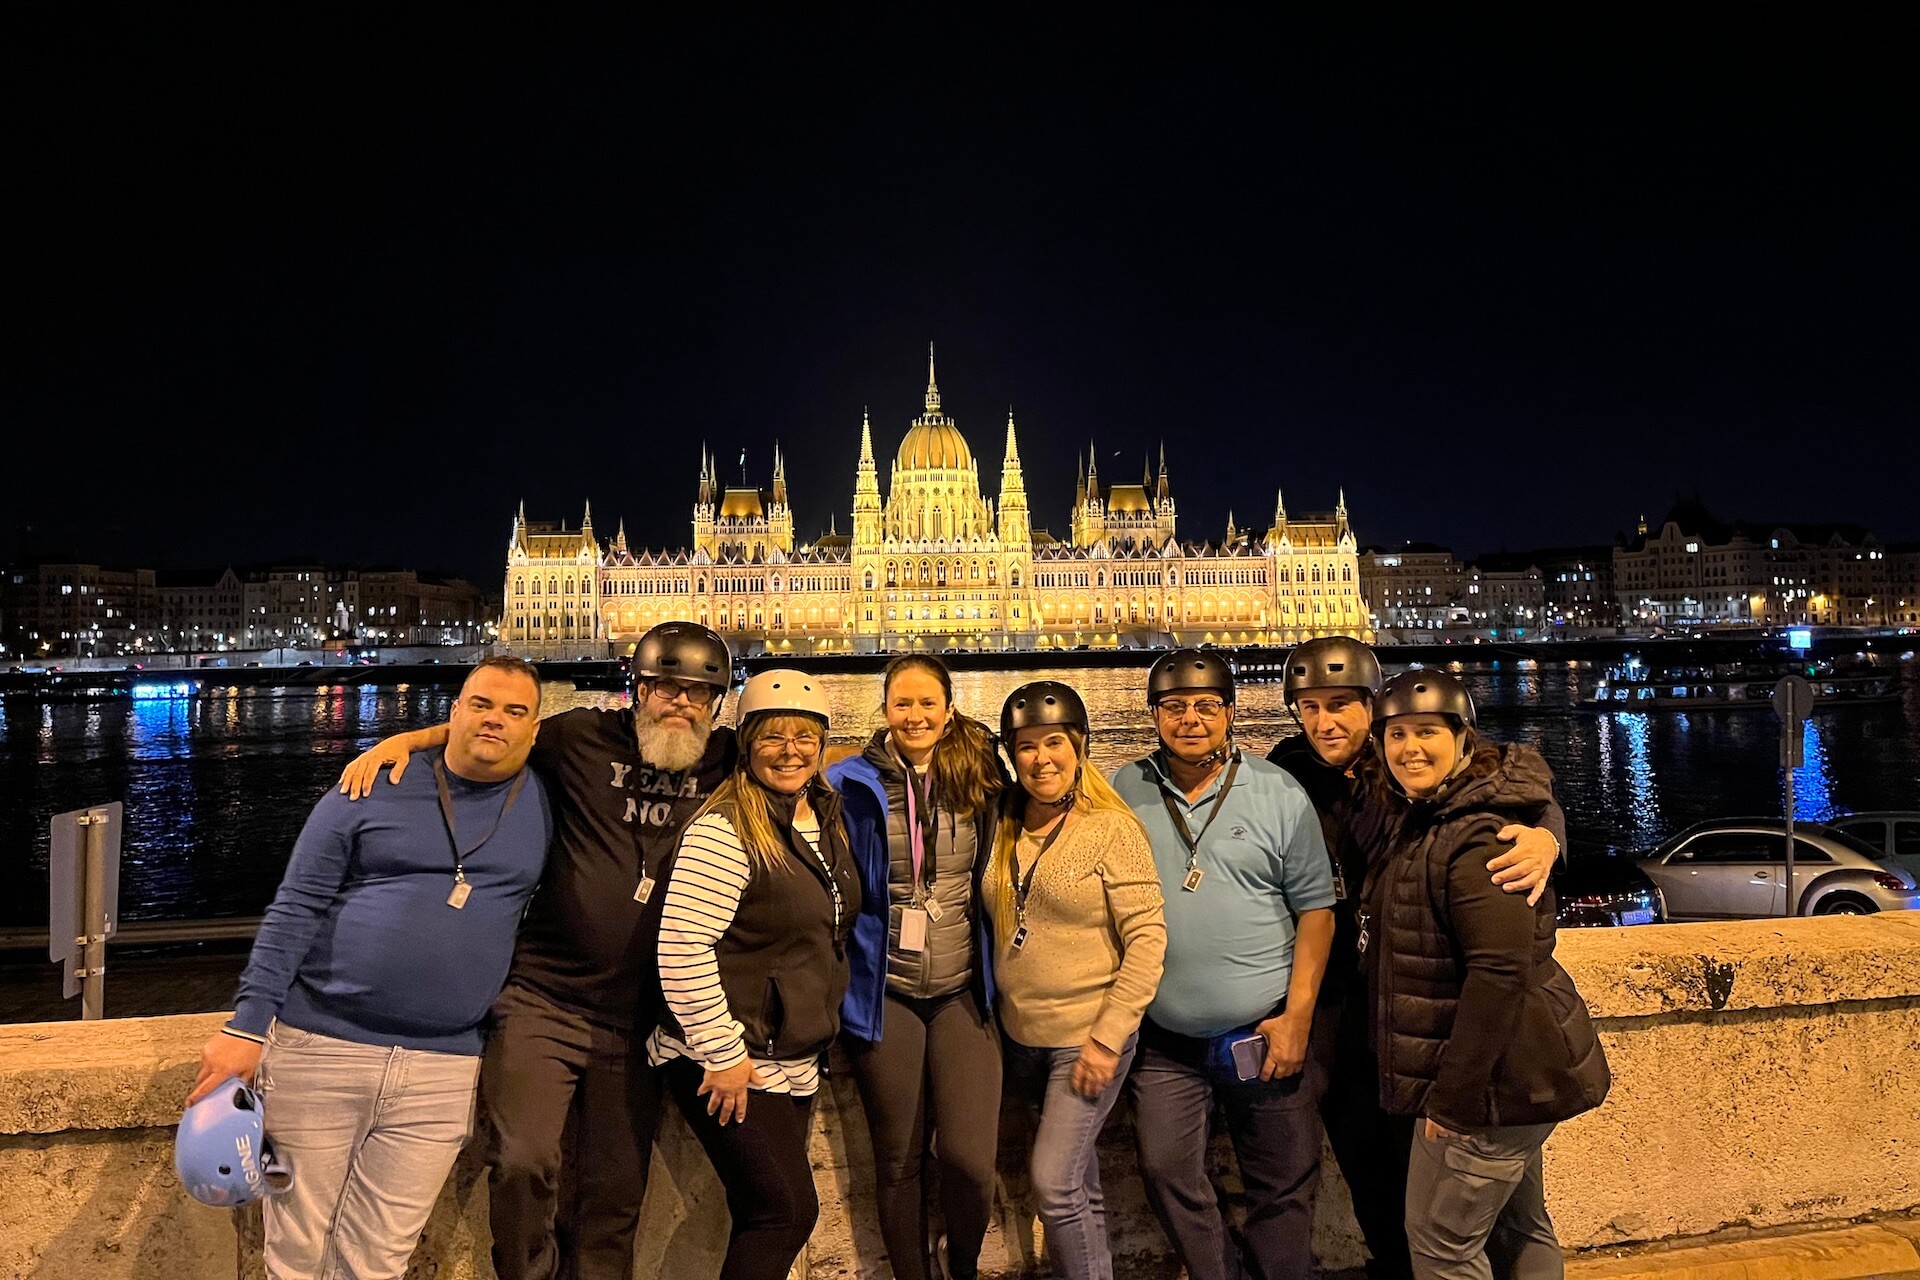 Un groupe de personnes lors de la visite nocturne avec le Parlement en arrière-plan